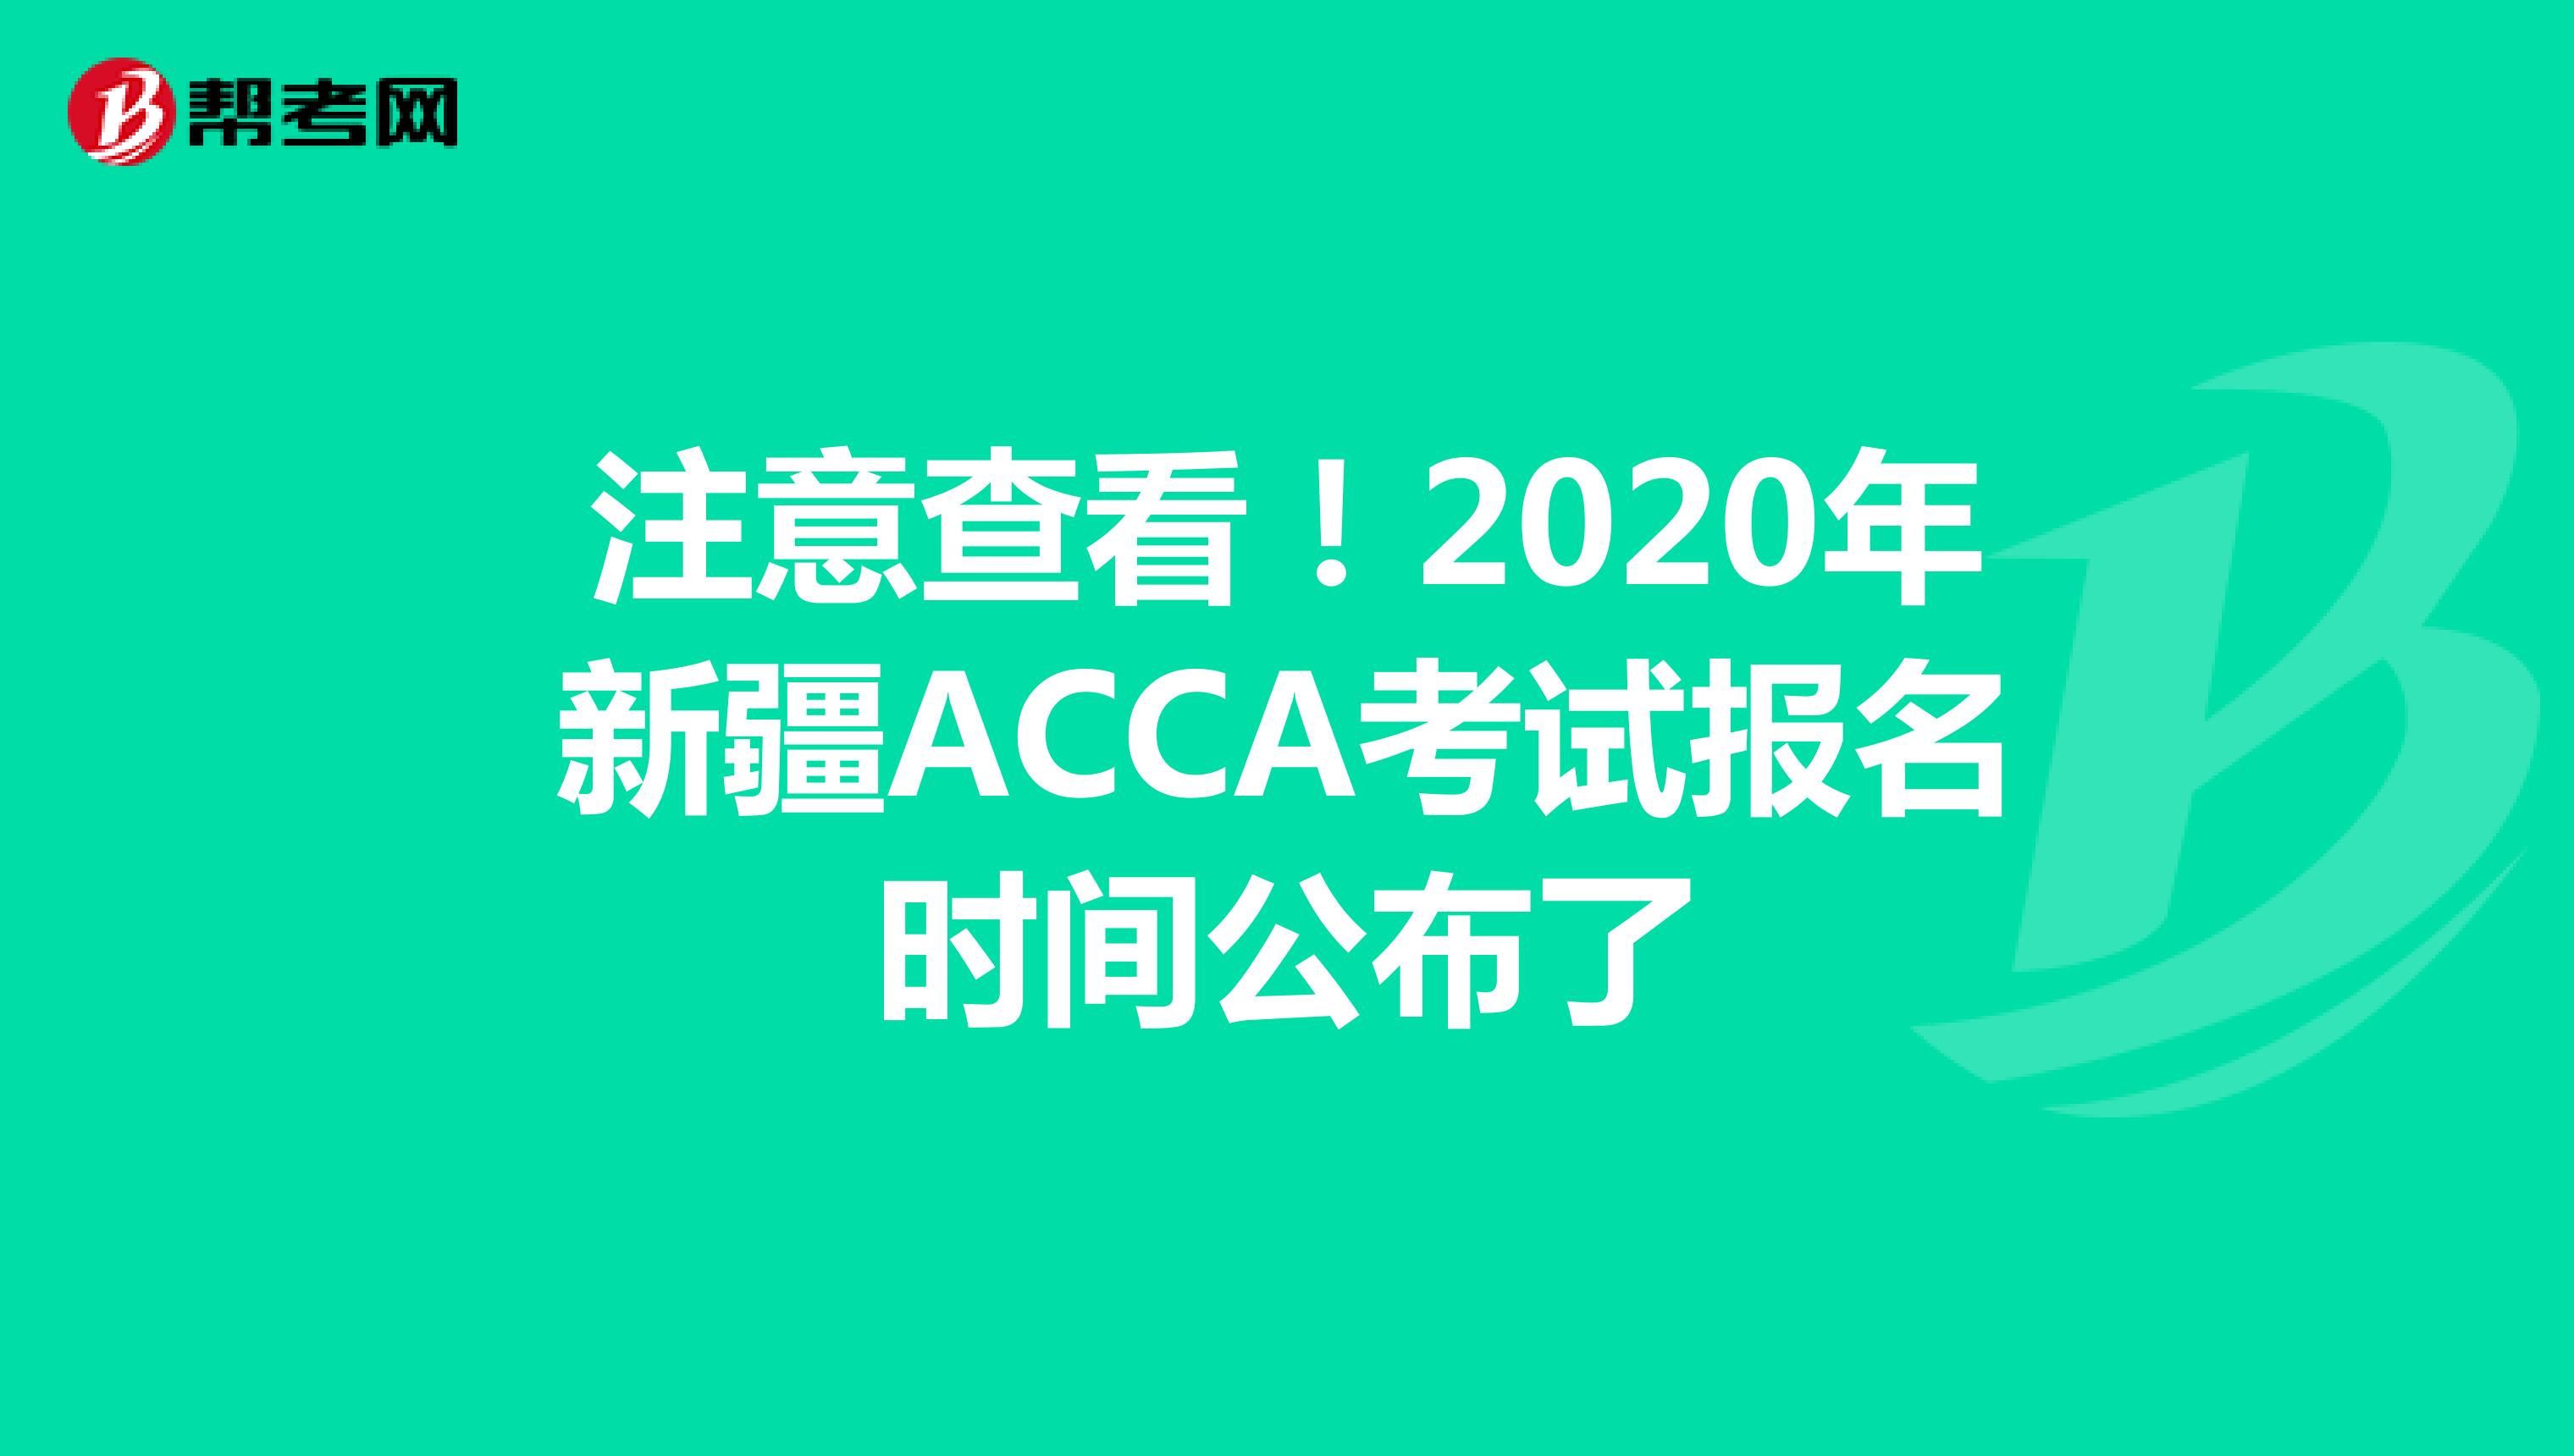 注意查看！2020年新疆ACCA考试报名时间公布了